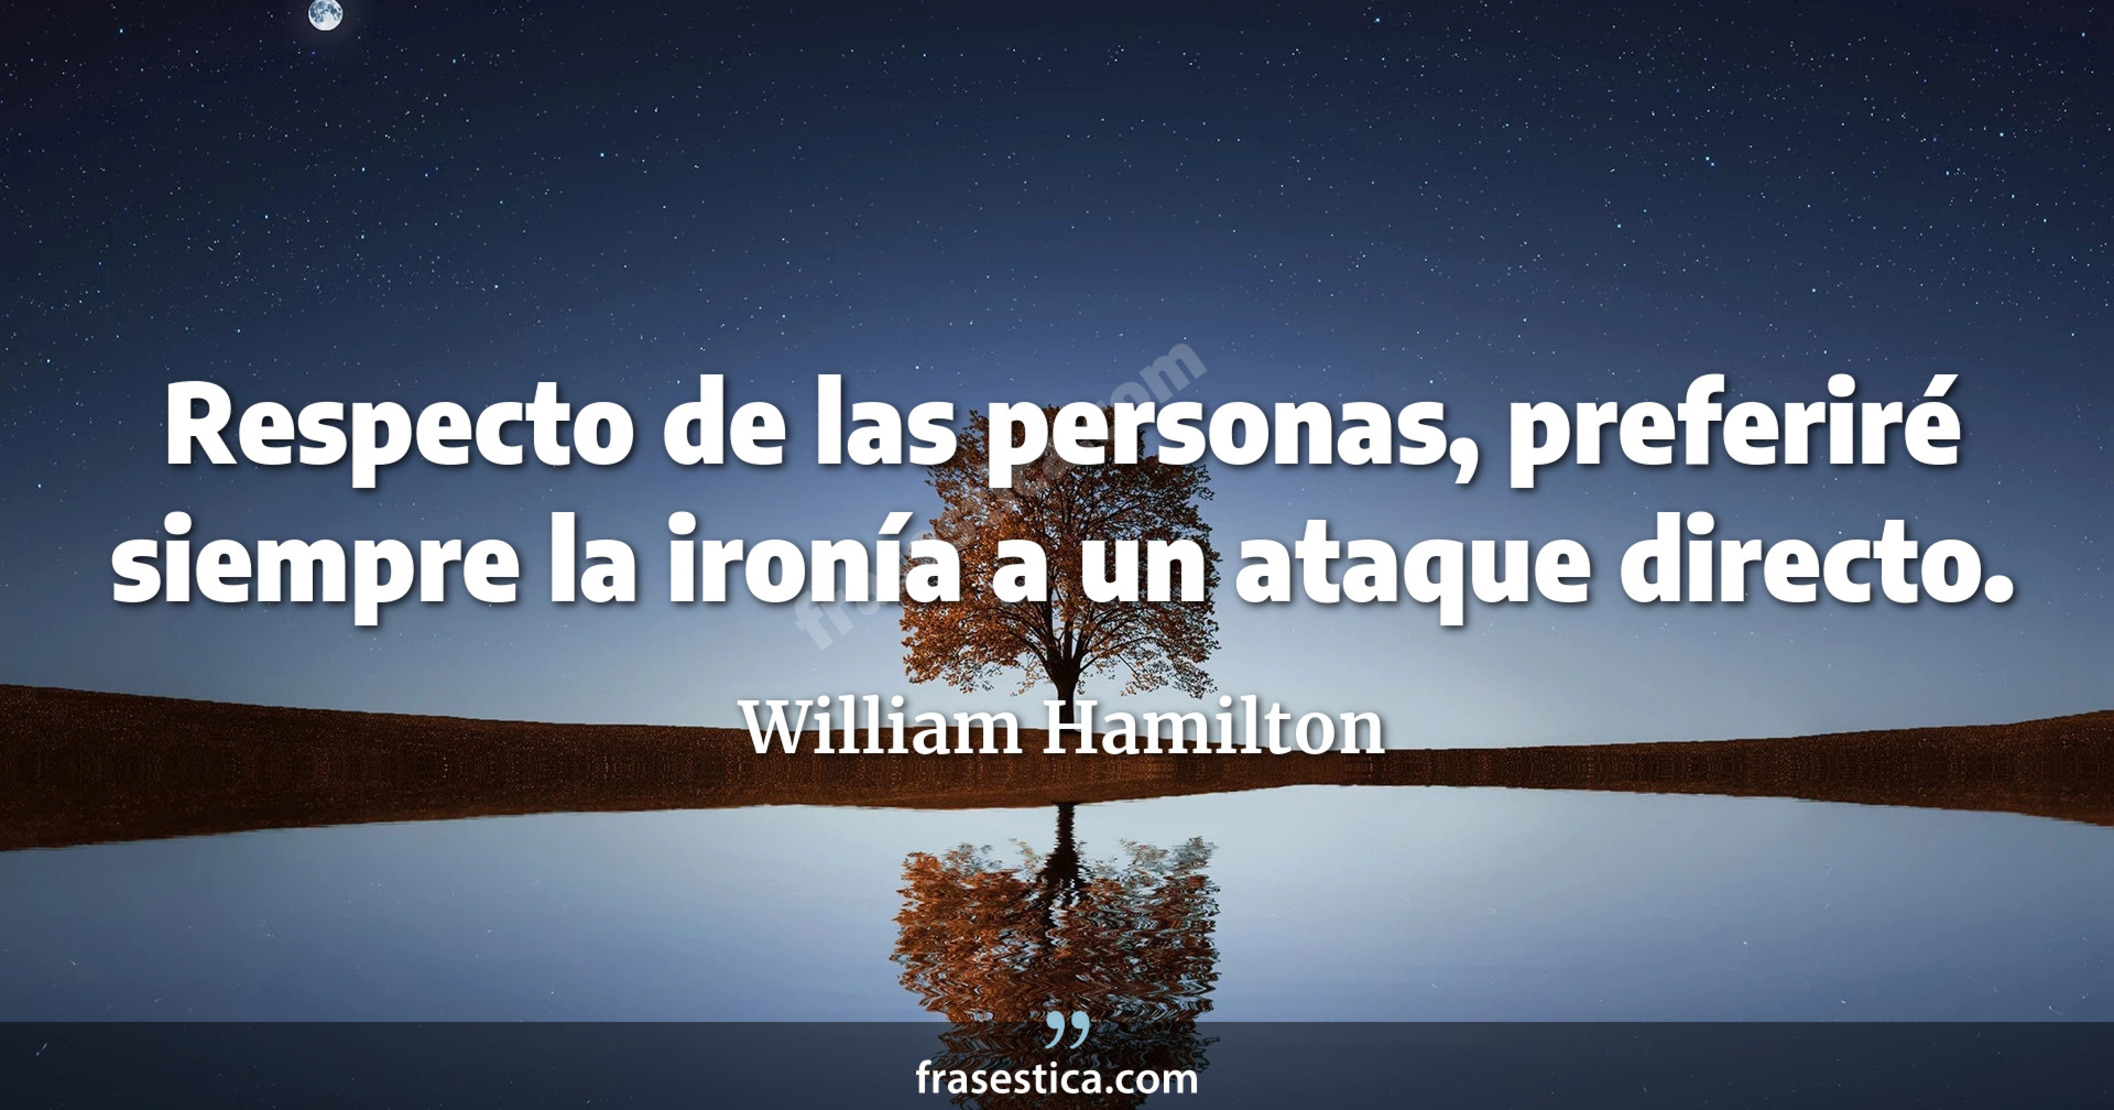 Respecto de las personas, preferiré siempre la ironía a un ataque directo. - William Hamilton